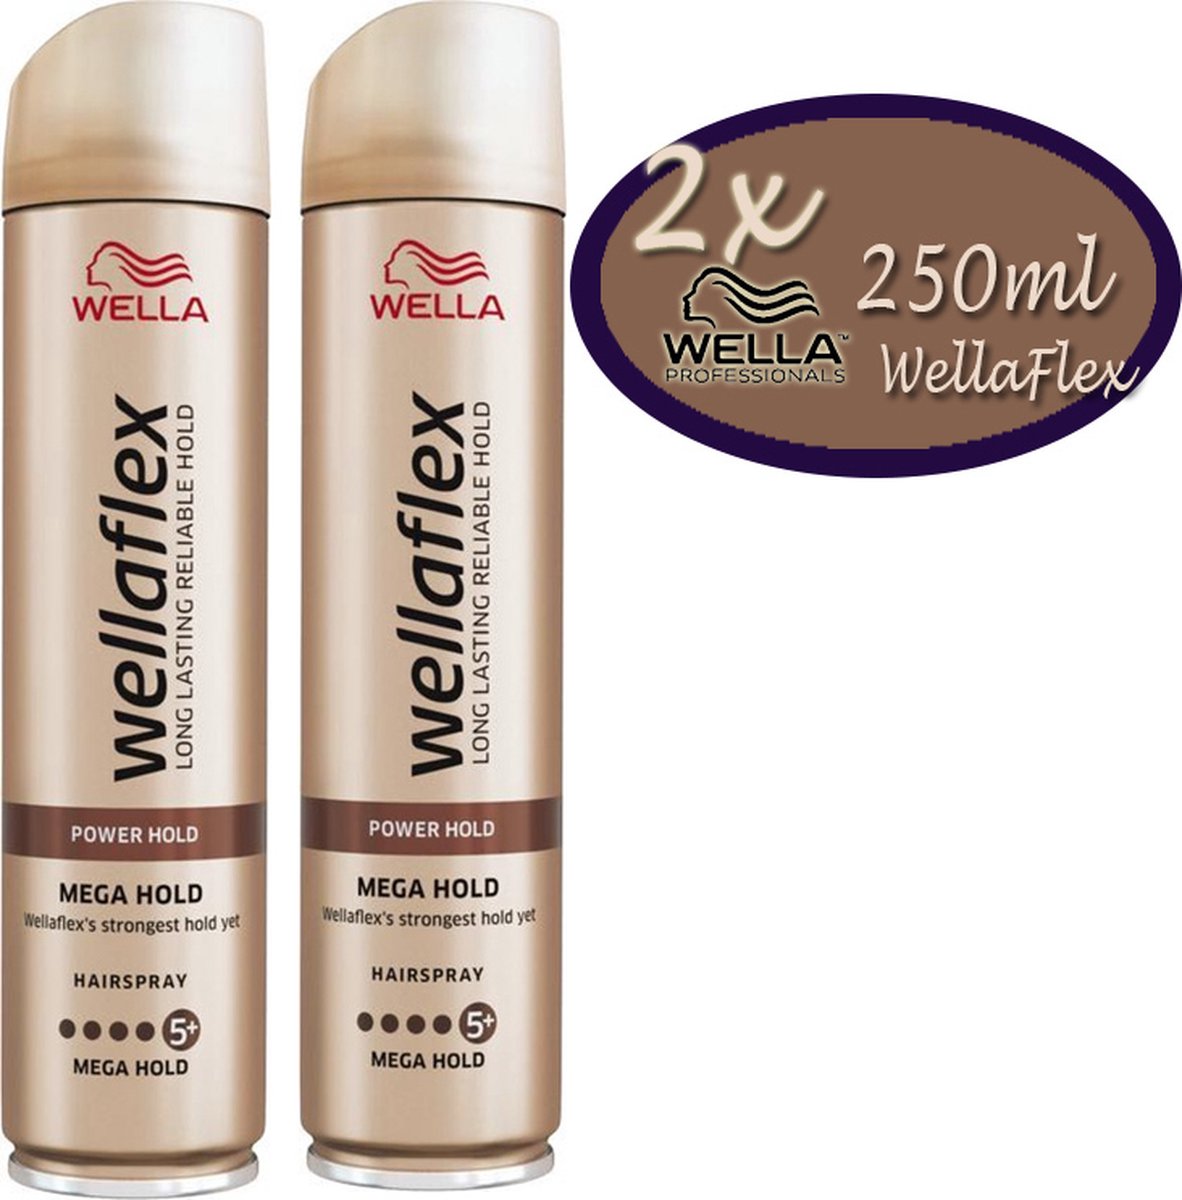 2x Wella Forte Flex Hairspray mega hold- 250ml